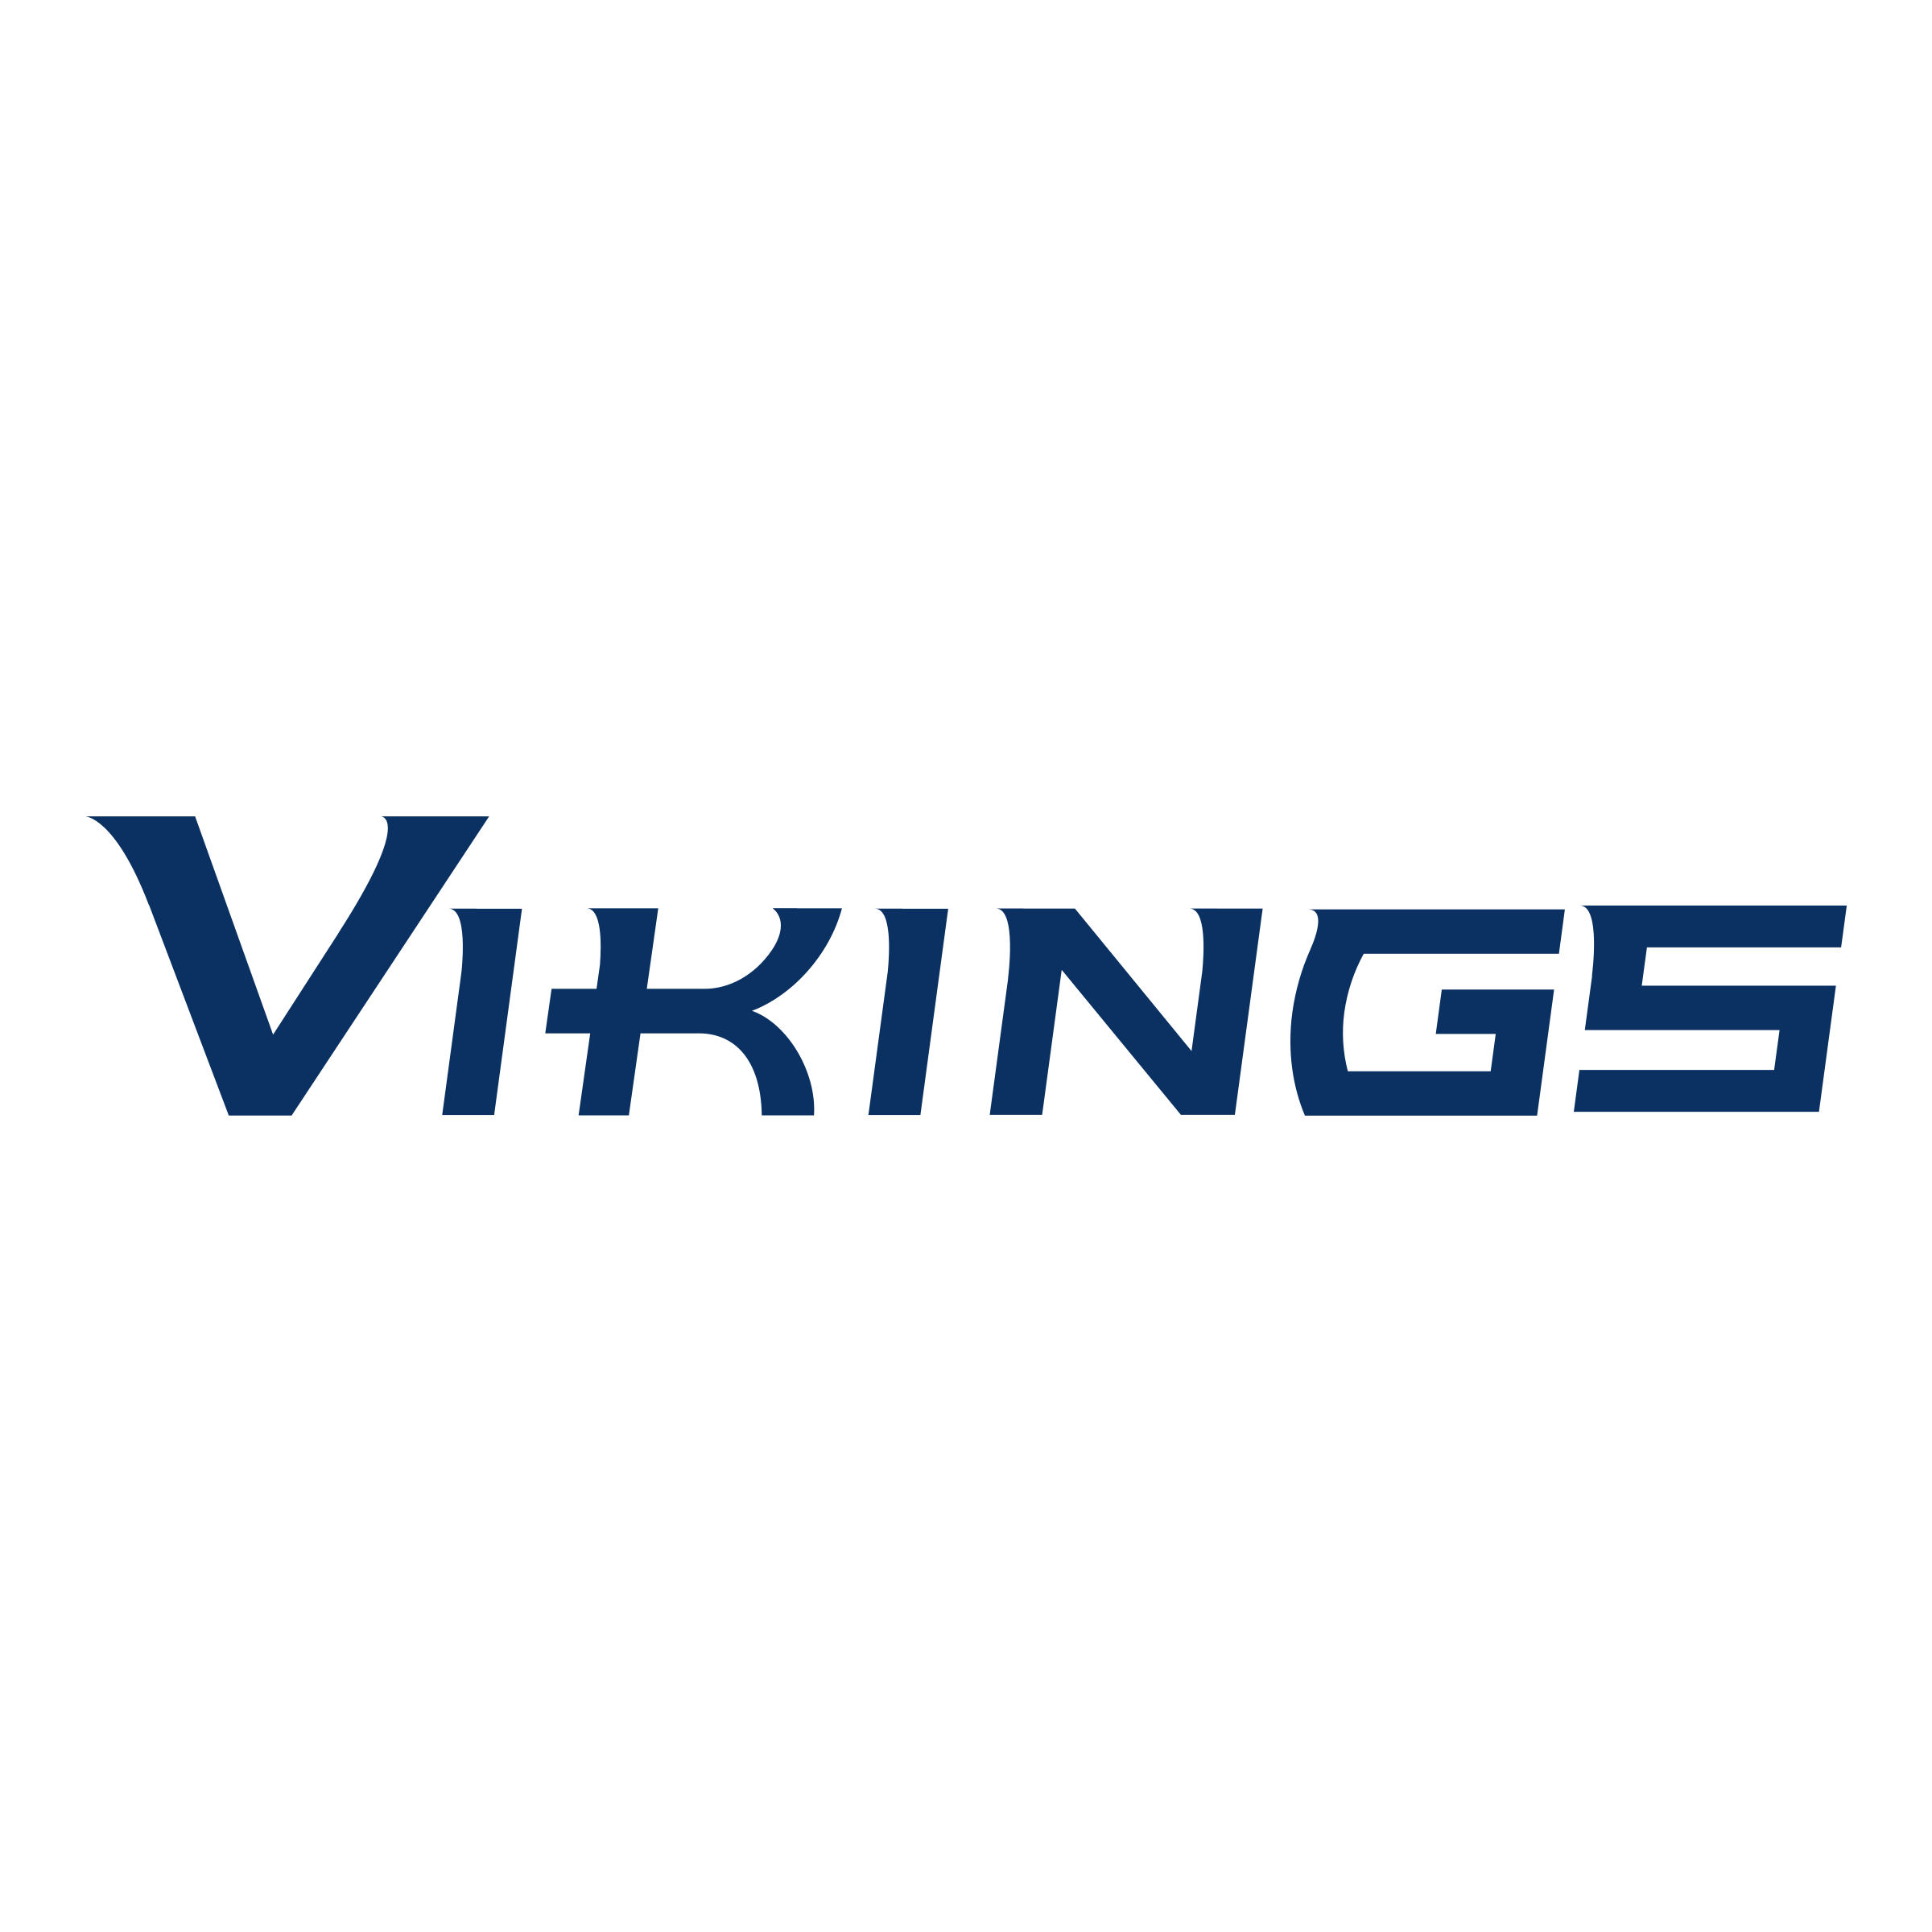 WWU Logo - WWU Vikings Logo PNG Transparent & SVG Vector